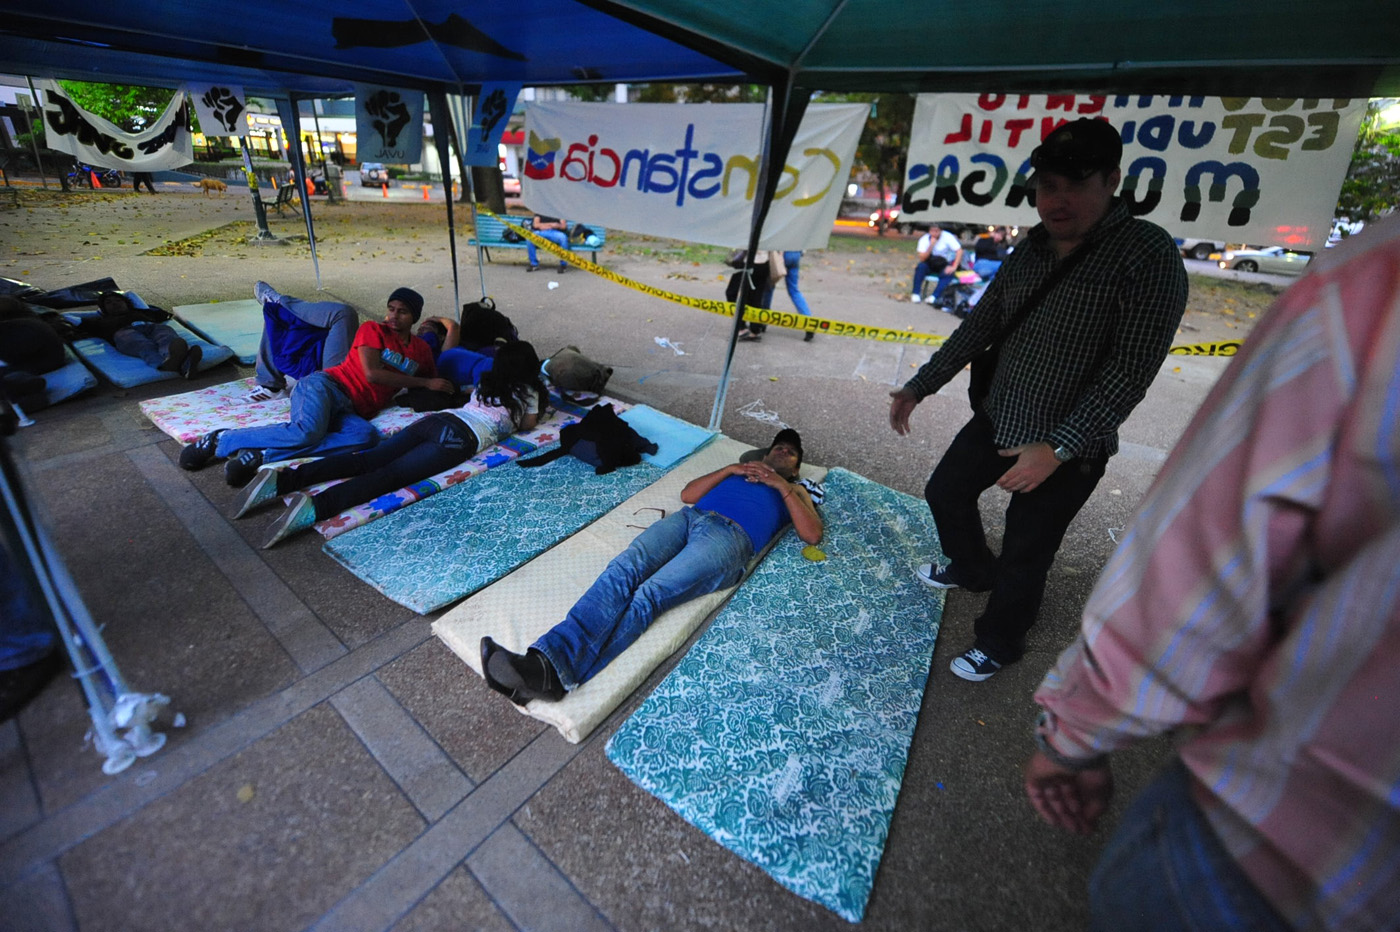 Estudiantes y jóvenes de Operación Soberanía iniciaron huelga de hambre (FOTOS)